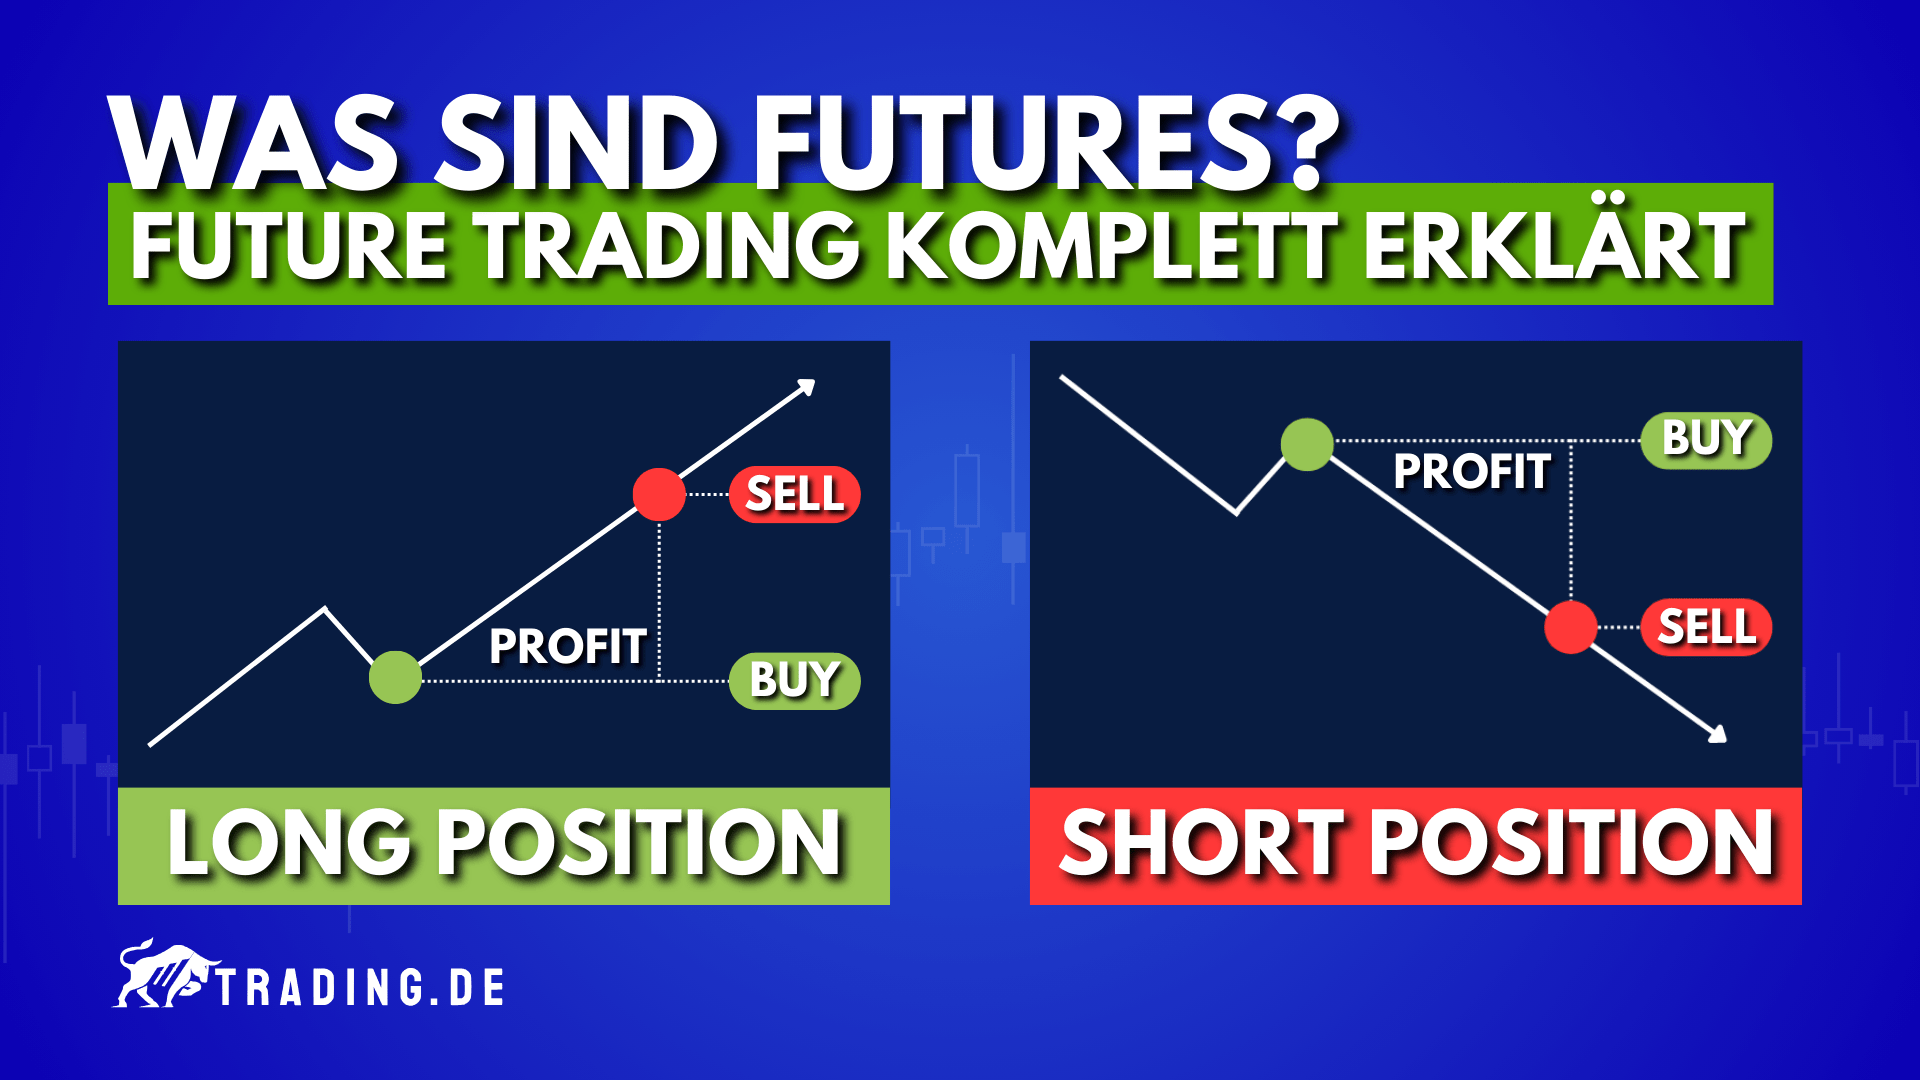 Future Trading komplett erklärt